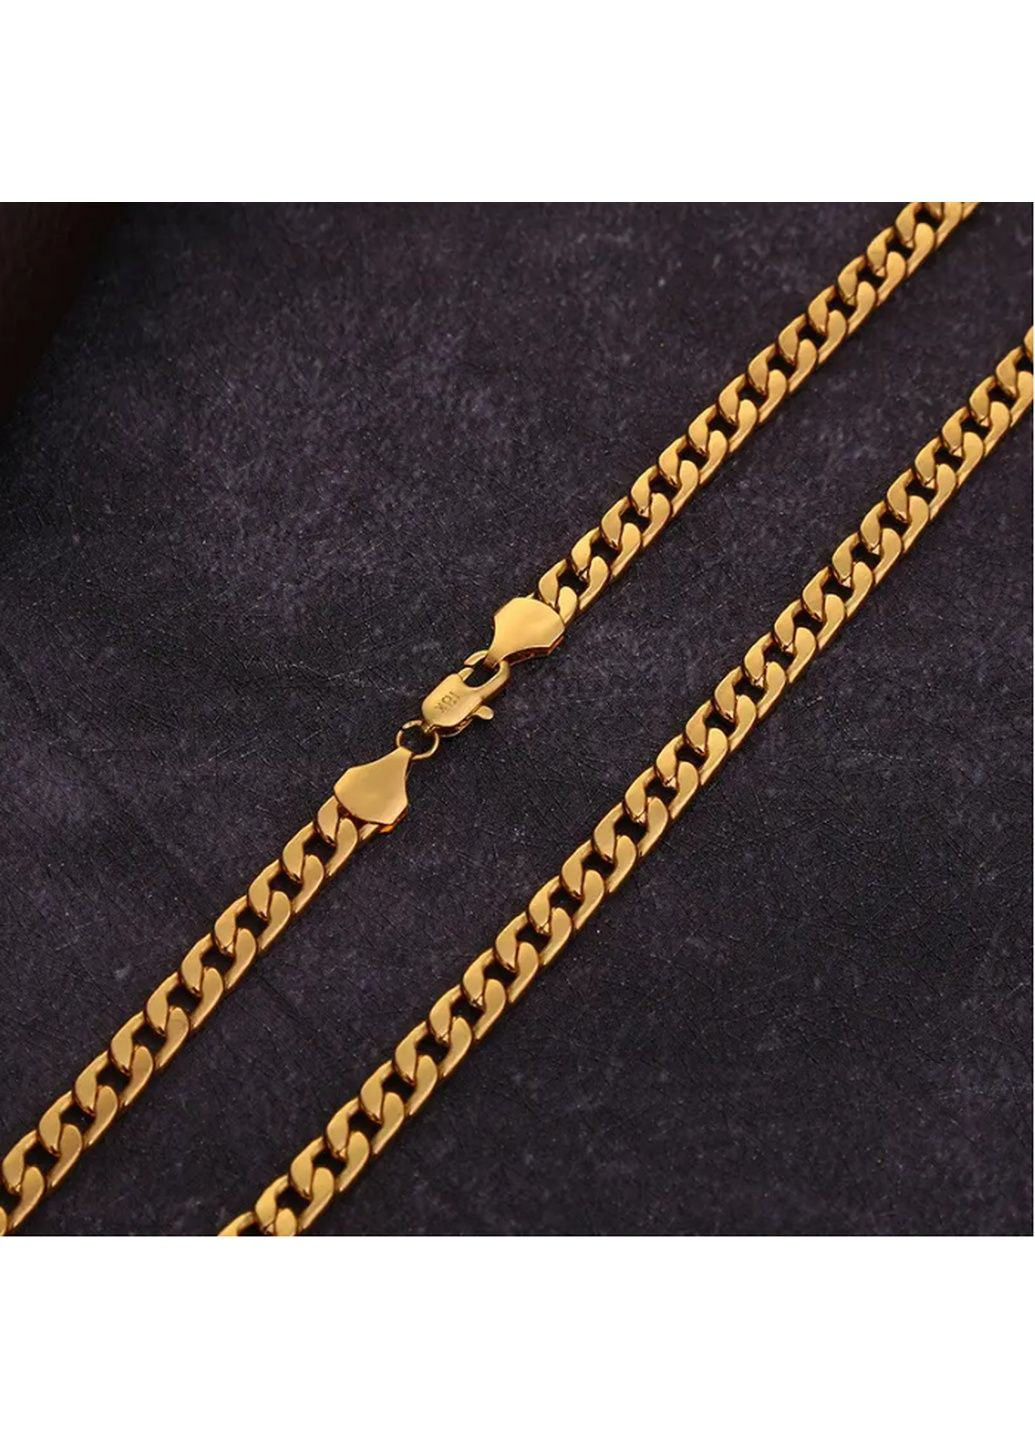 Чоловічий ланцюг золотий (колір) 55 см 6 мм, Чоловічий ланцюг на шию золотого кольору Ц-4 Mira (289870001)